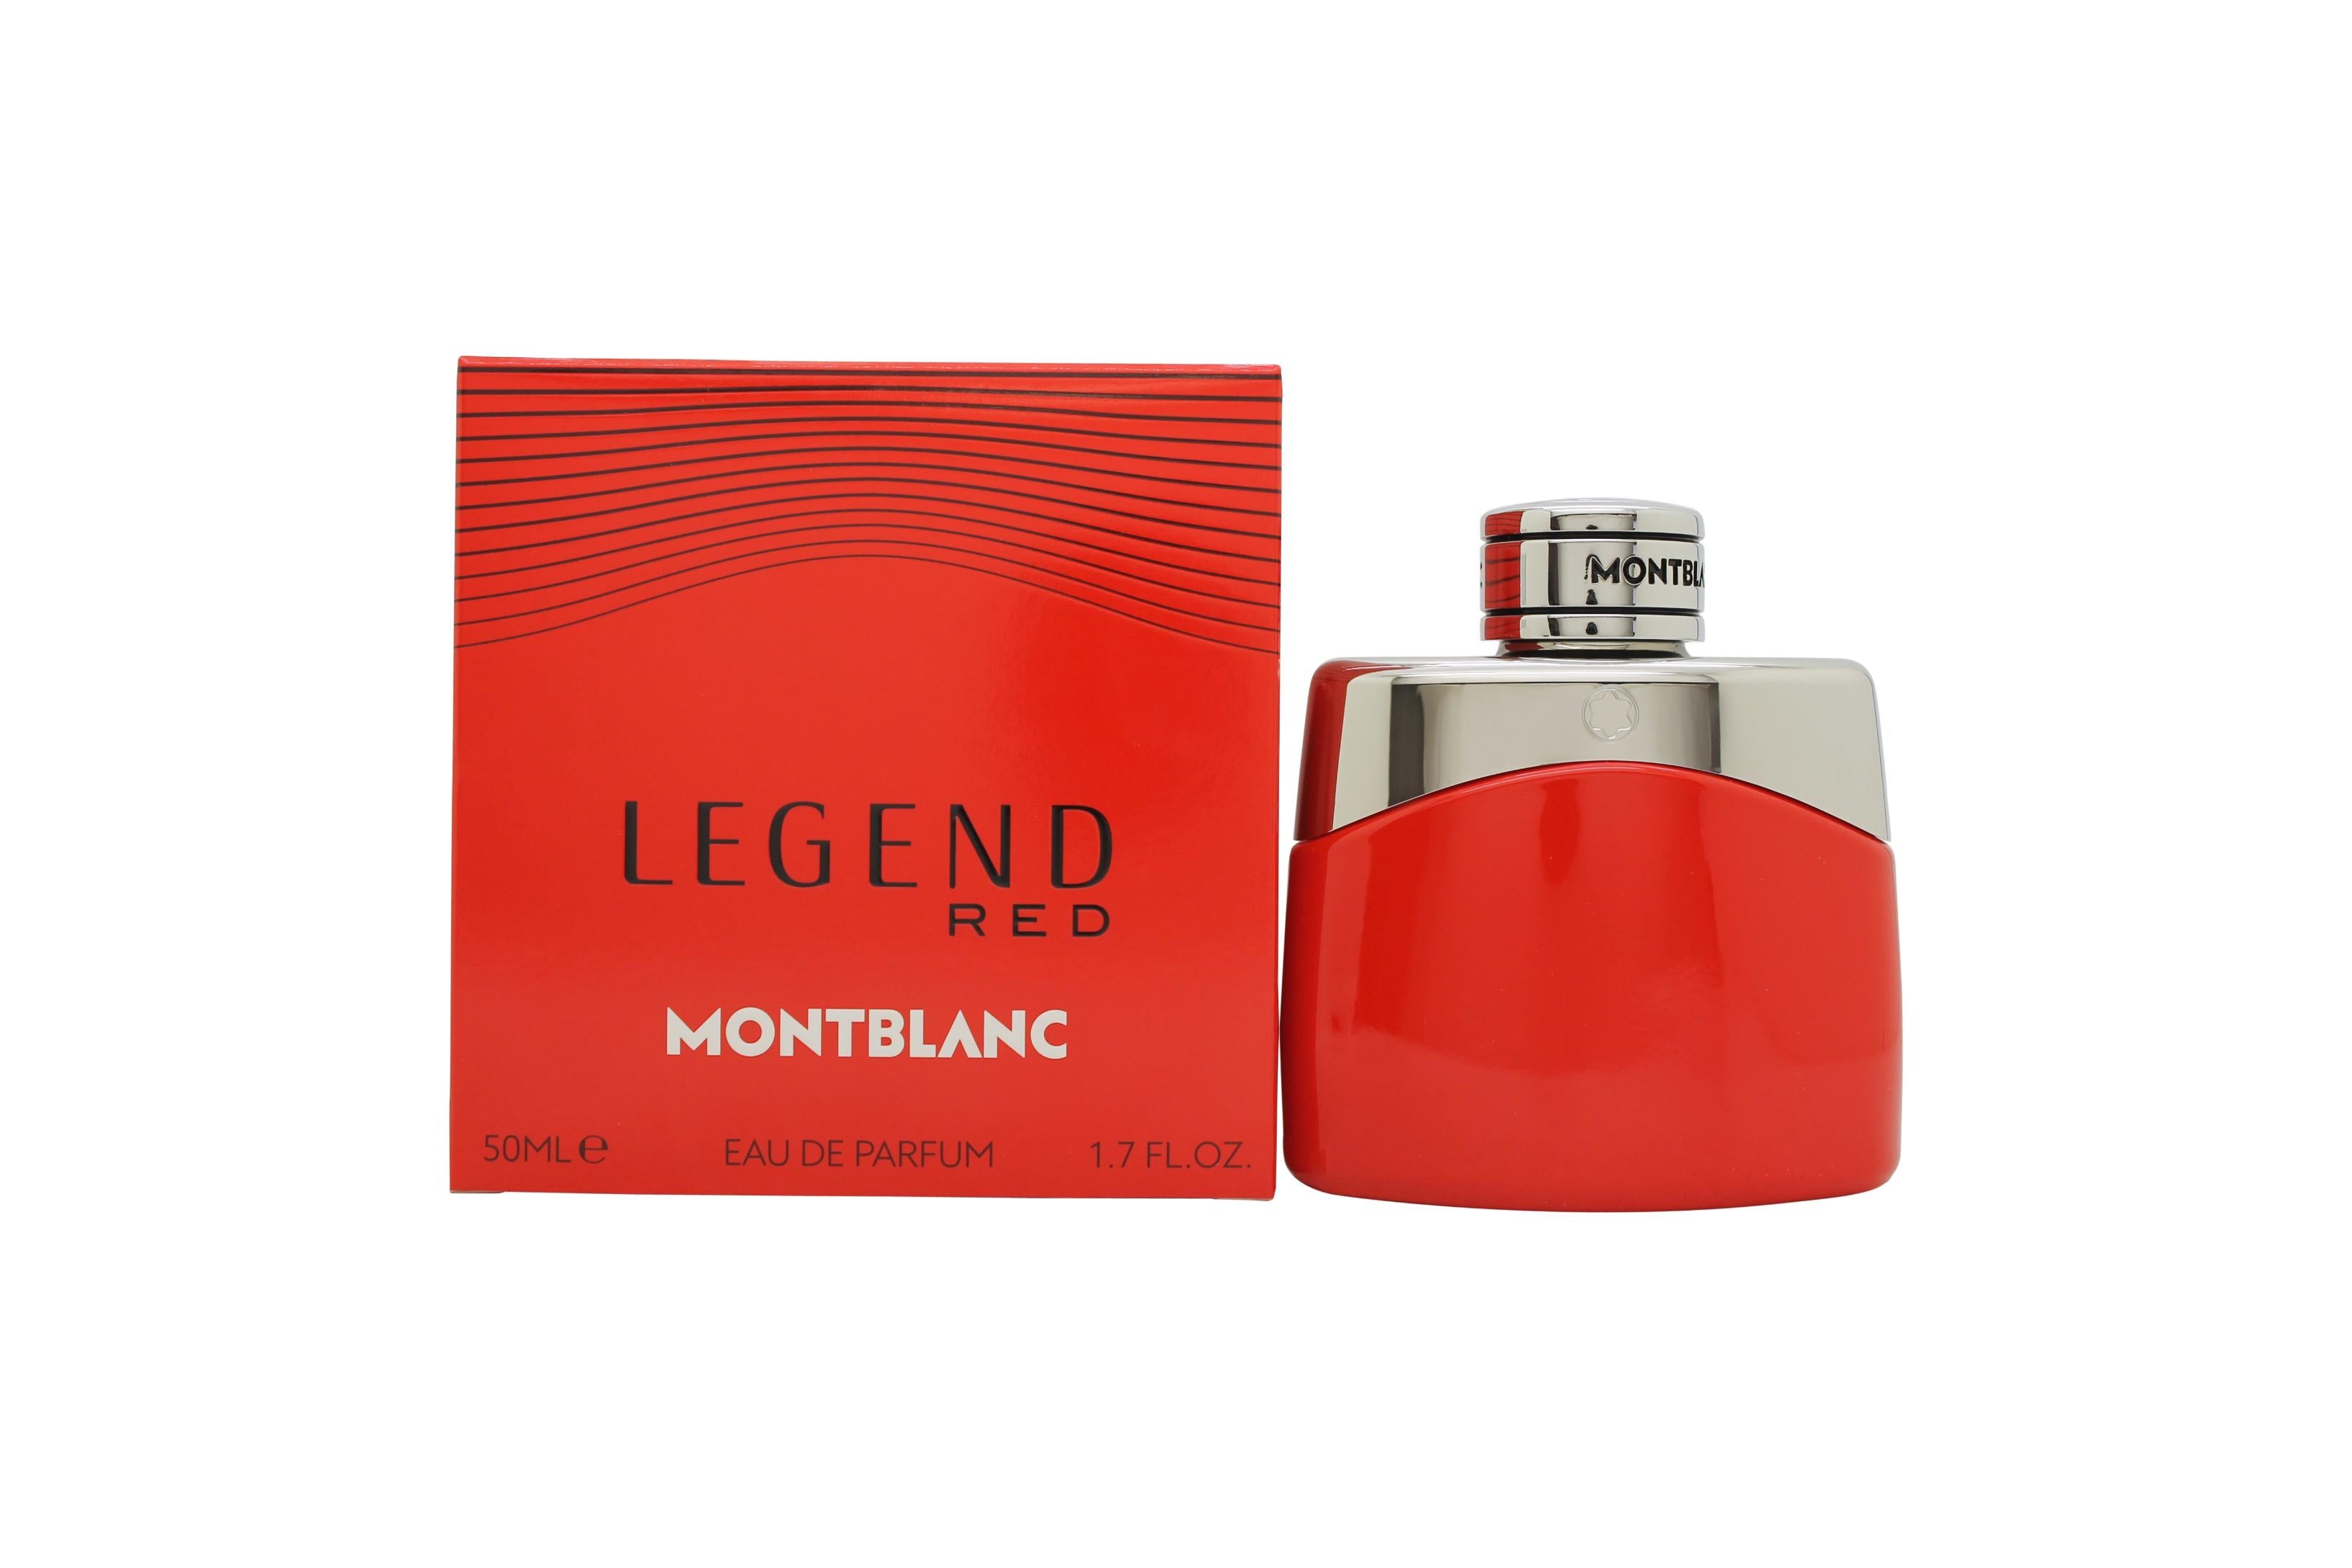 View Mont Blanc Legend Red Eau de Parfum 50ml Spray information